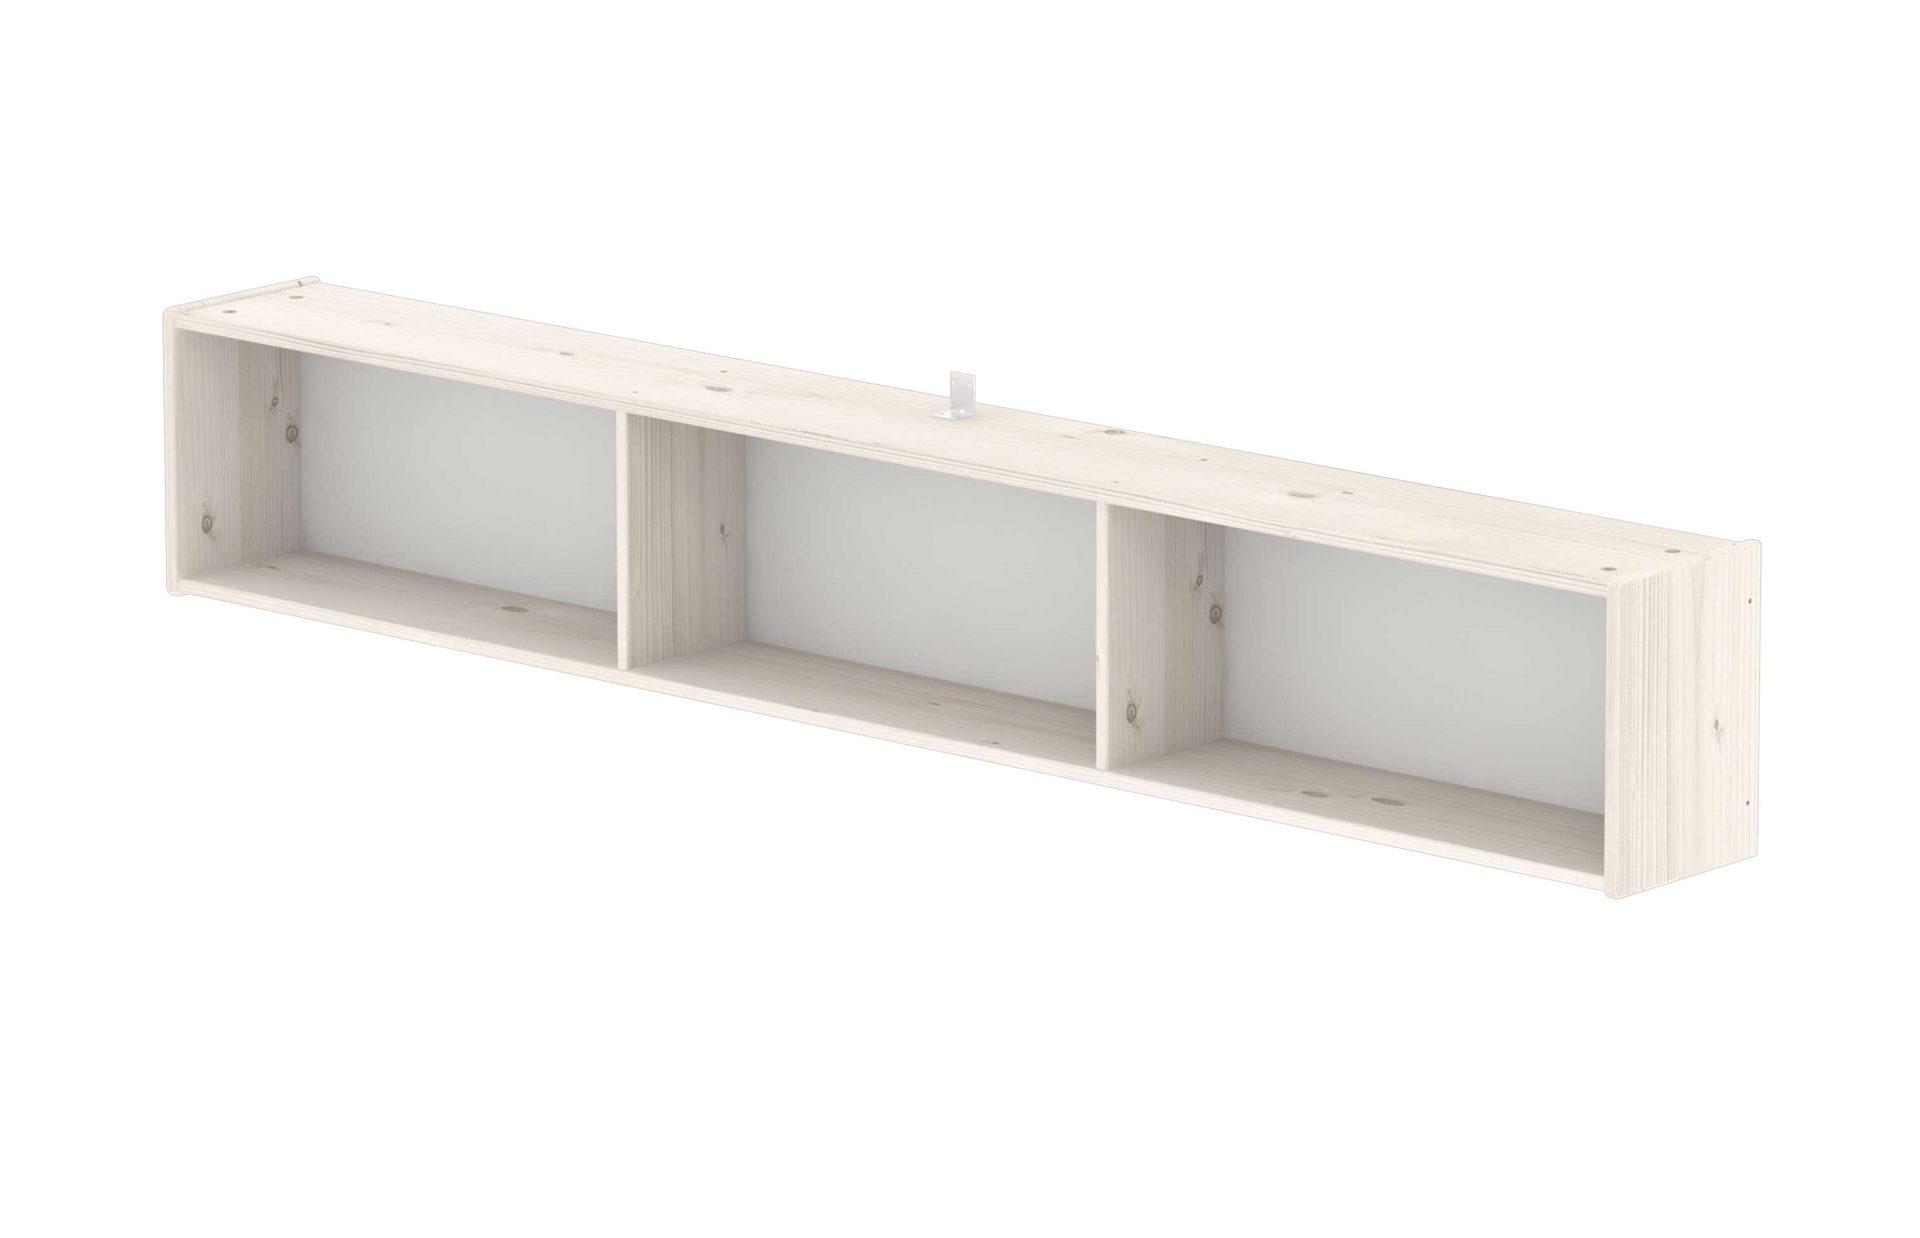 Tischplatte Flexa aus Holz in Weiß FLEXA Bücherregal  für Classic Betten, Kiefer weiß lasiert - Länge ca. 197 cm